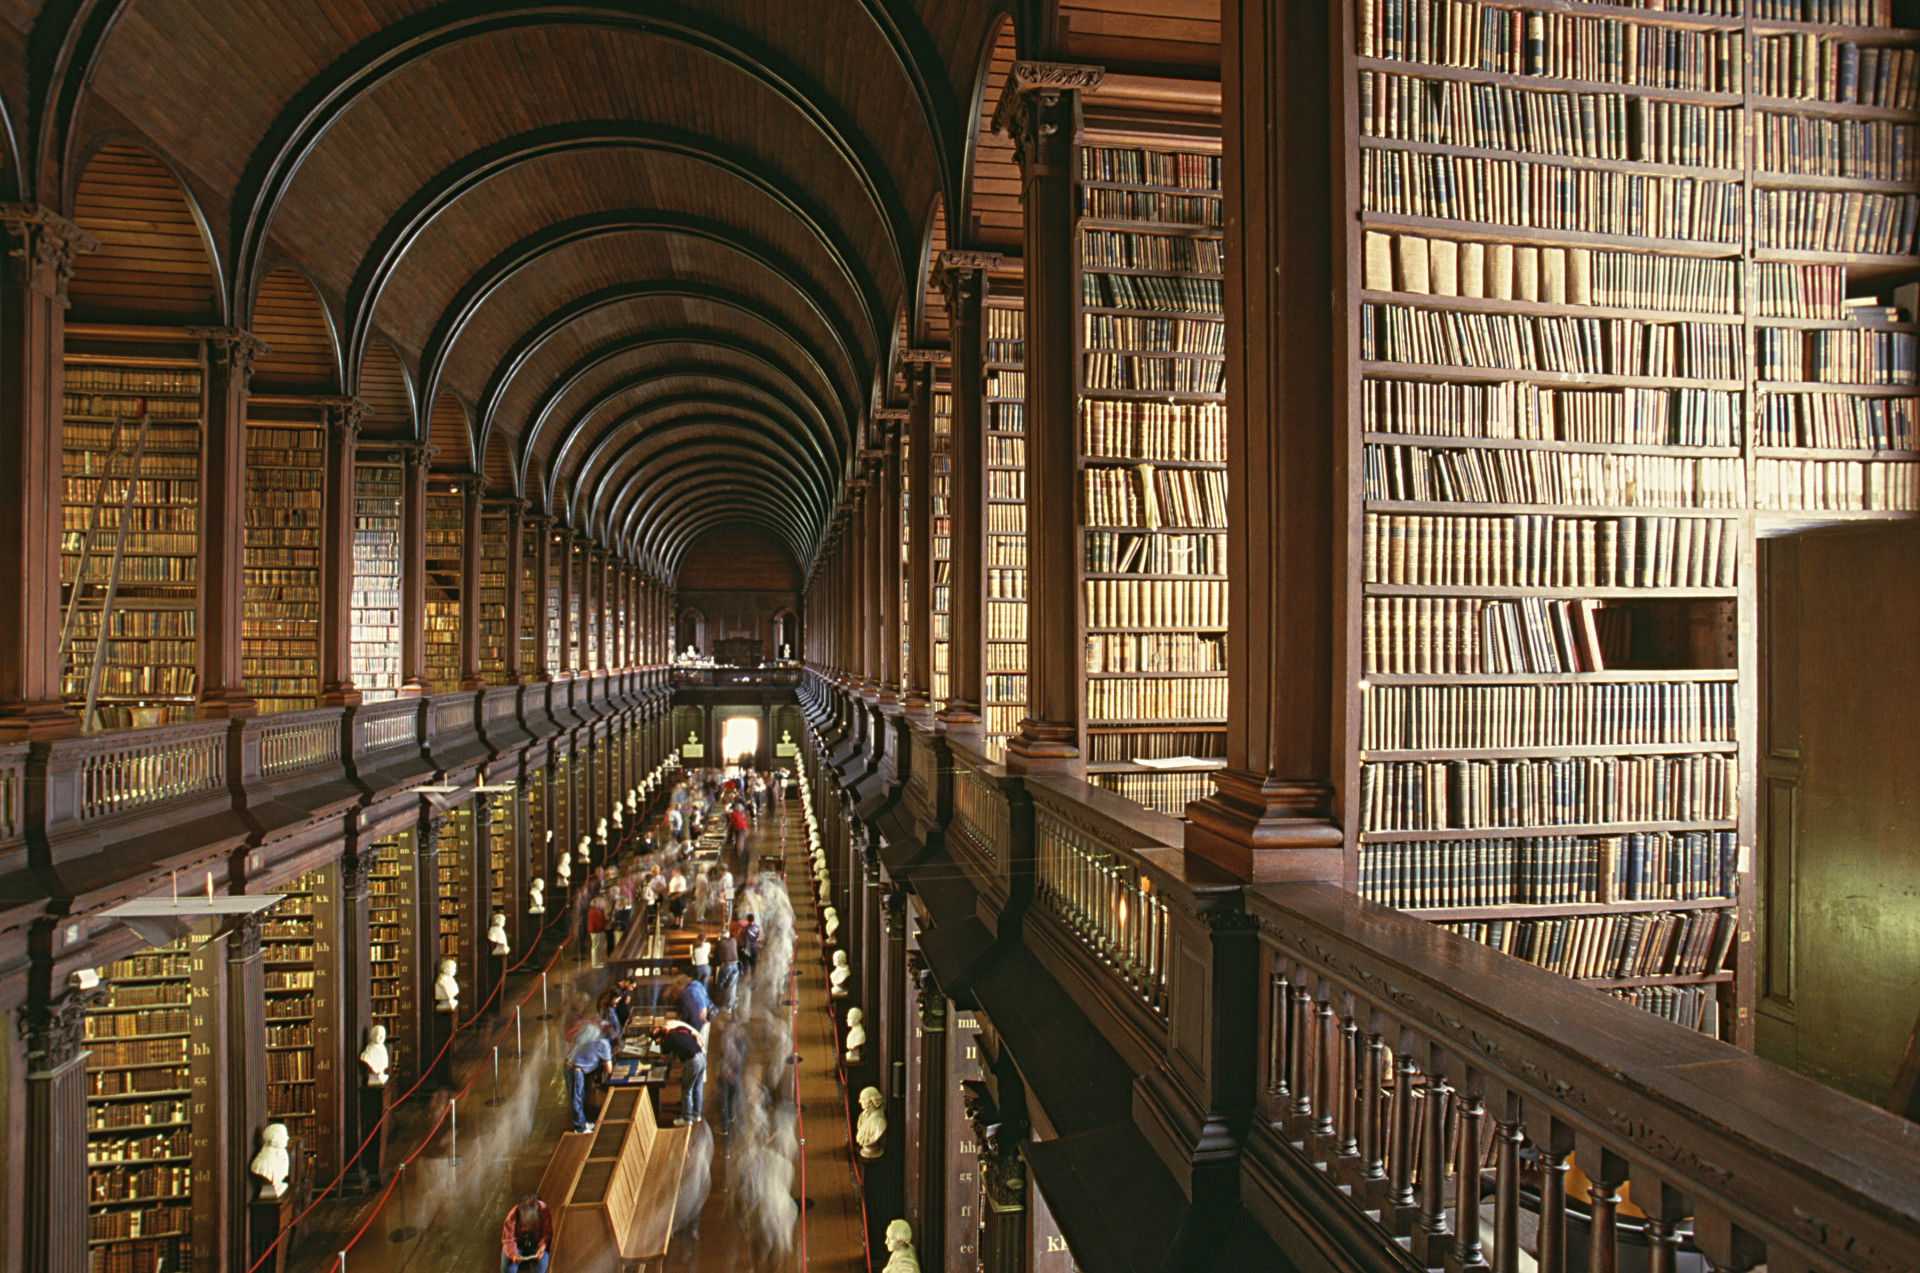 Située dans le Trinity College, à Dublin, il s'agit de la plus grande bibliothèque d'Irlande. La Long Room vous semblera sûrement familière car elle a figuré dans bon nombre de films...